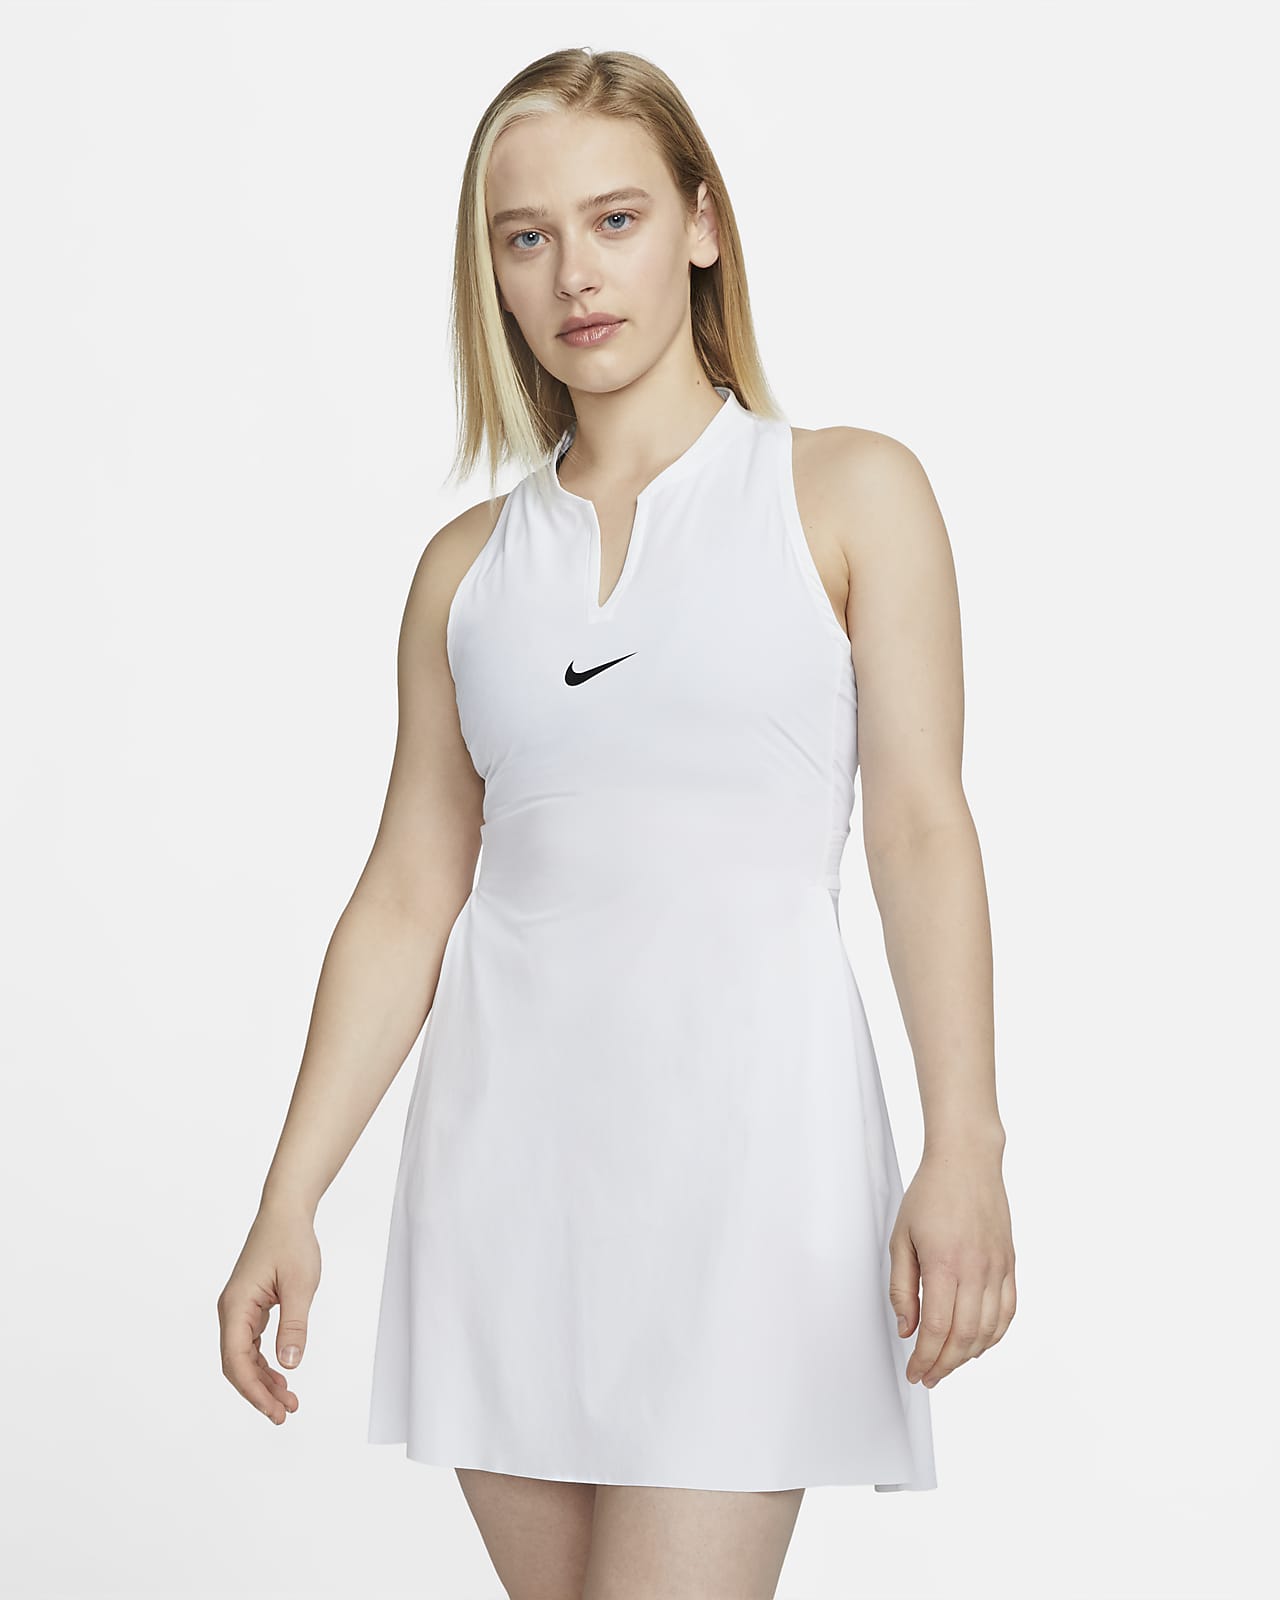 Vestido de tenis para Nike Dri-FIT Nike.com